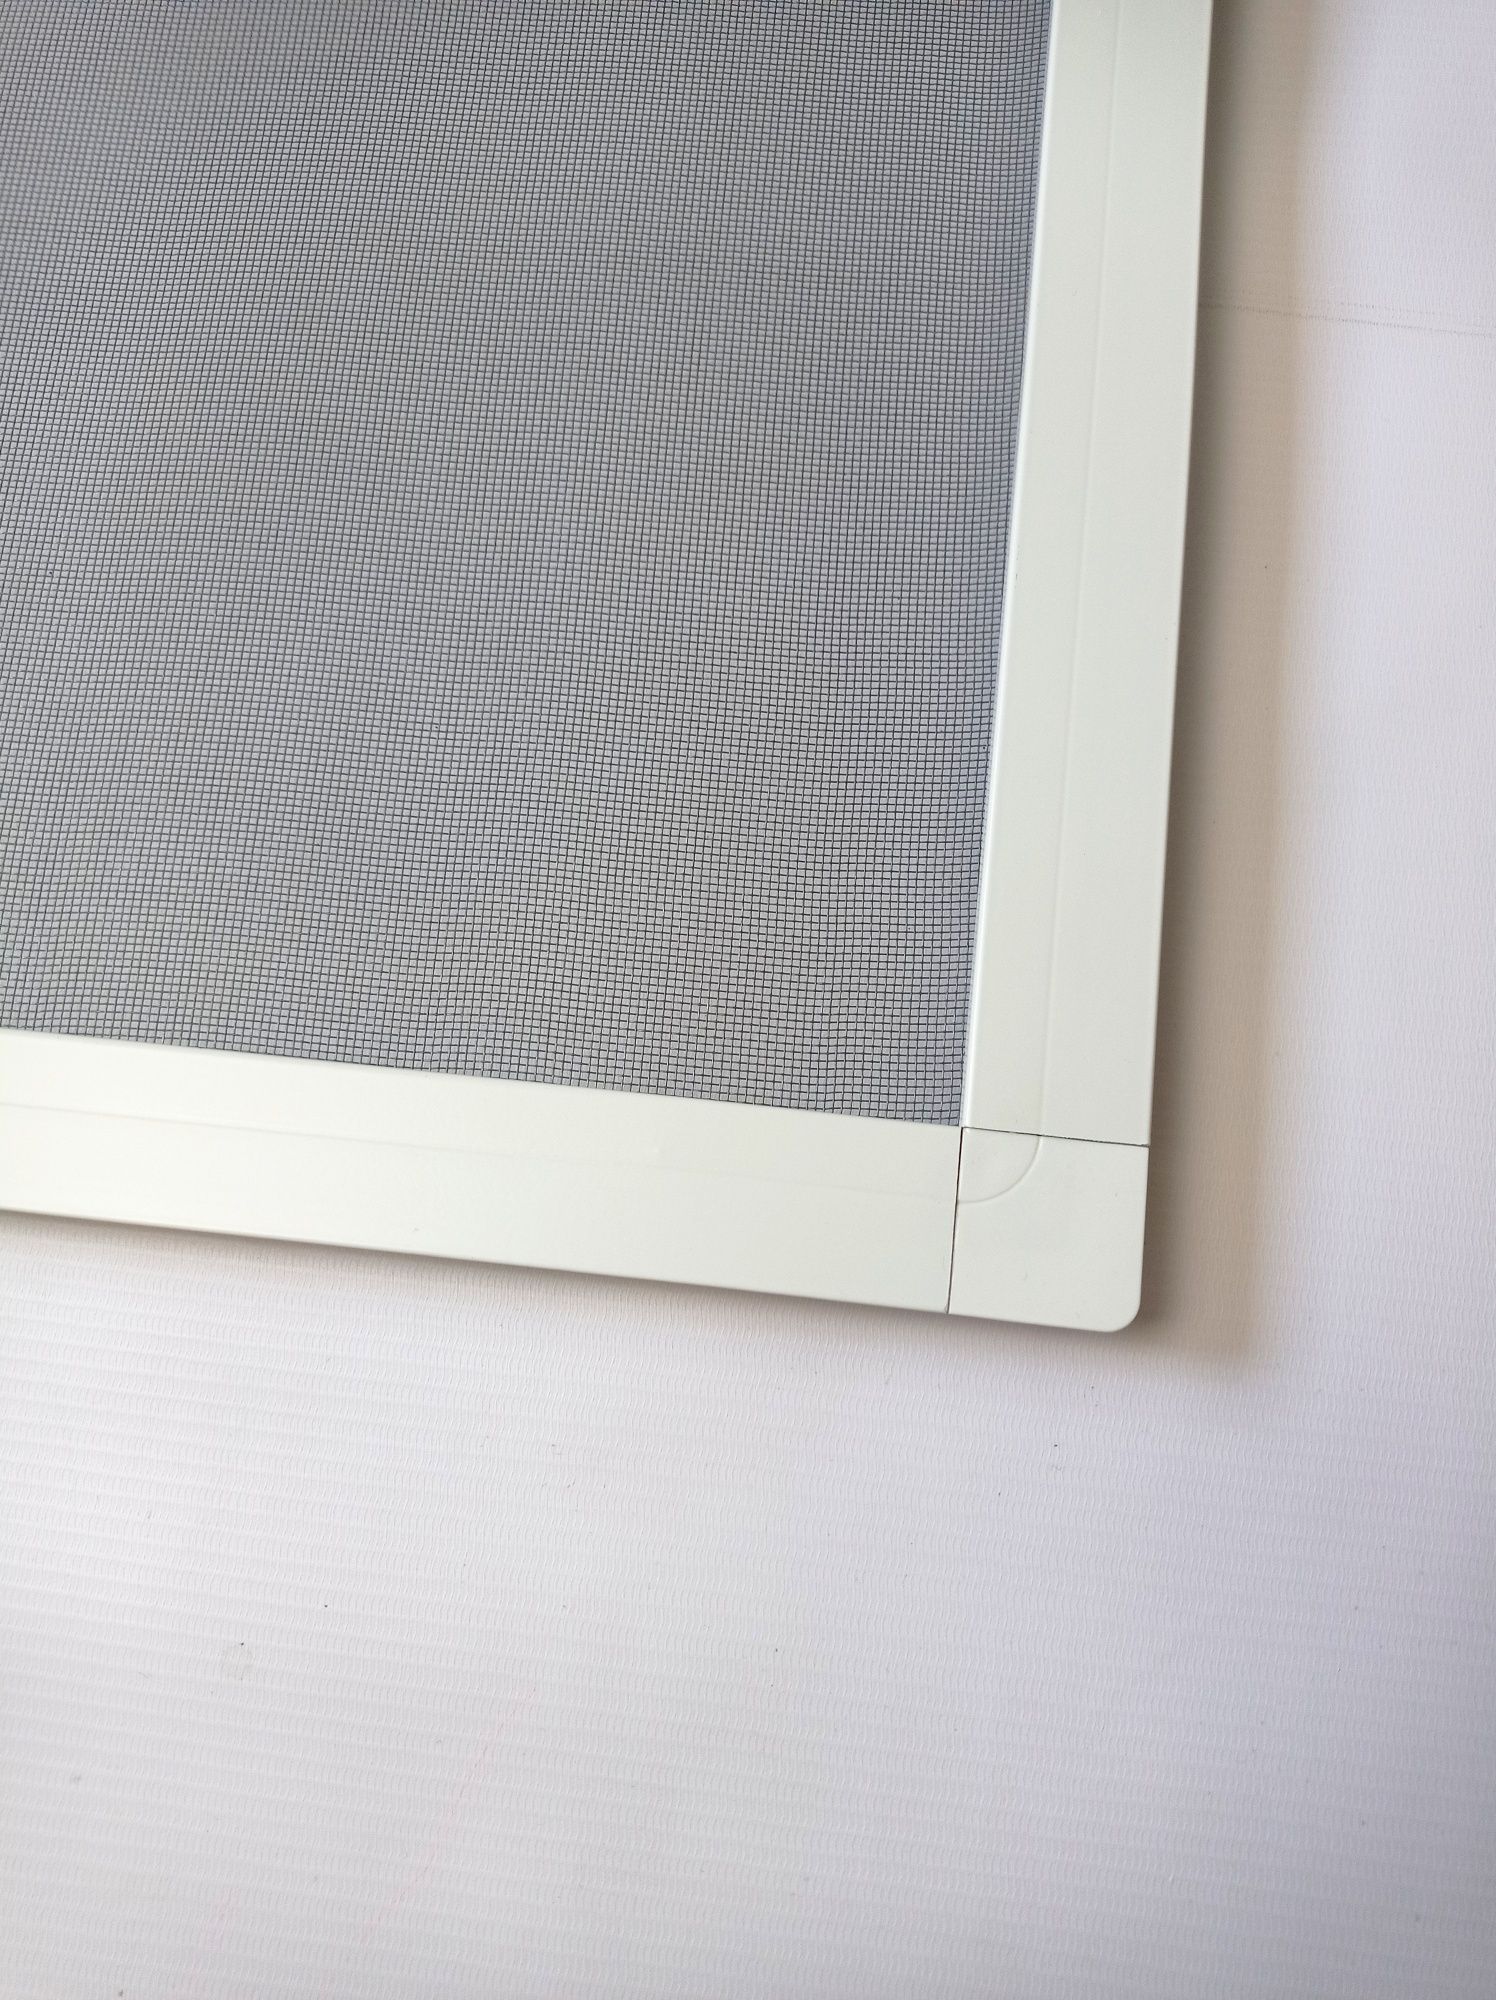 Moskitiery okienne aluminiowe złożone na wymiar - różne kolory